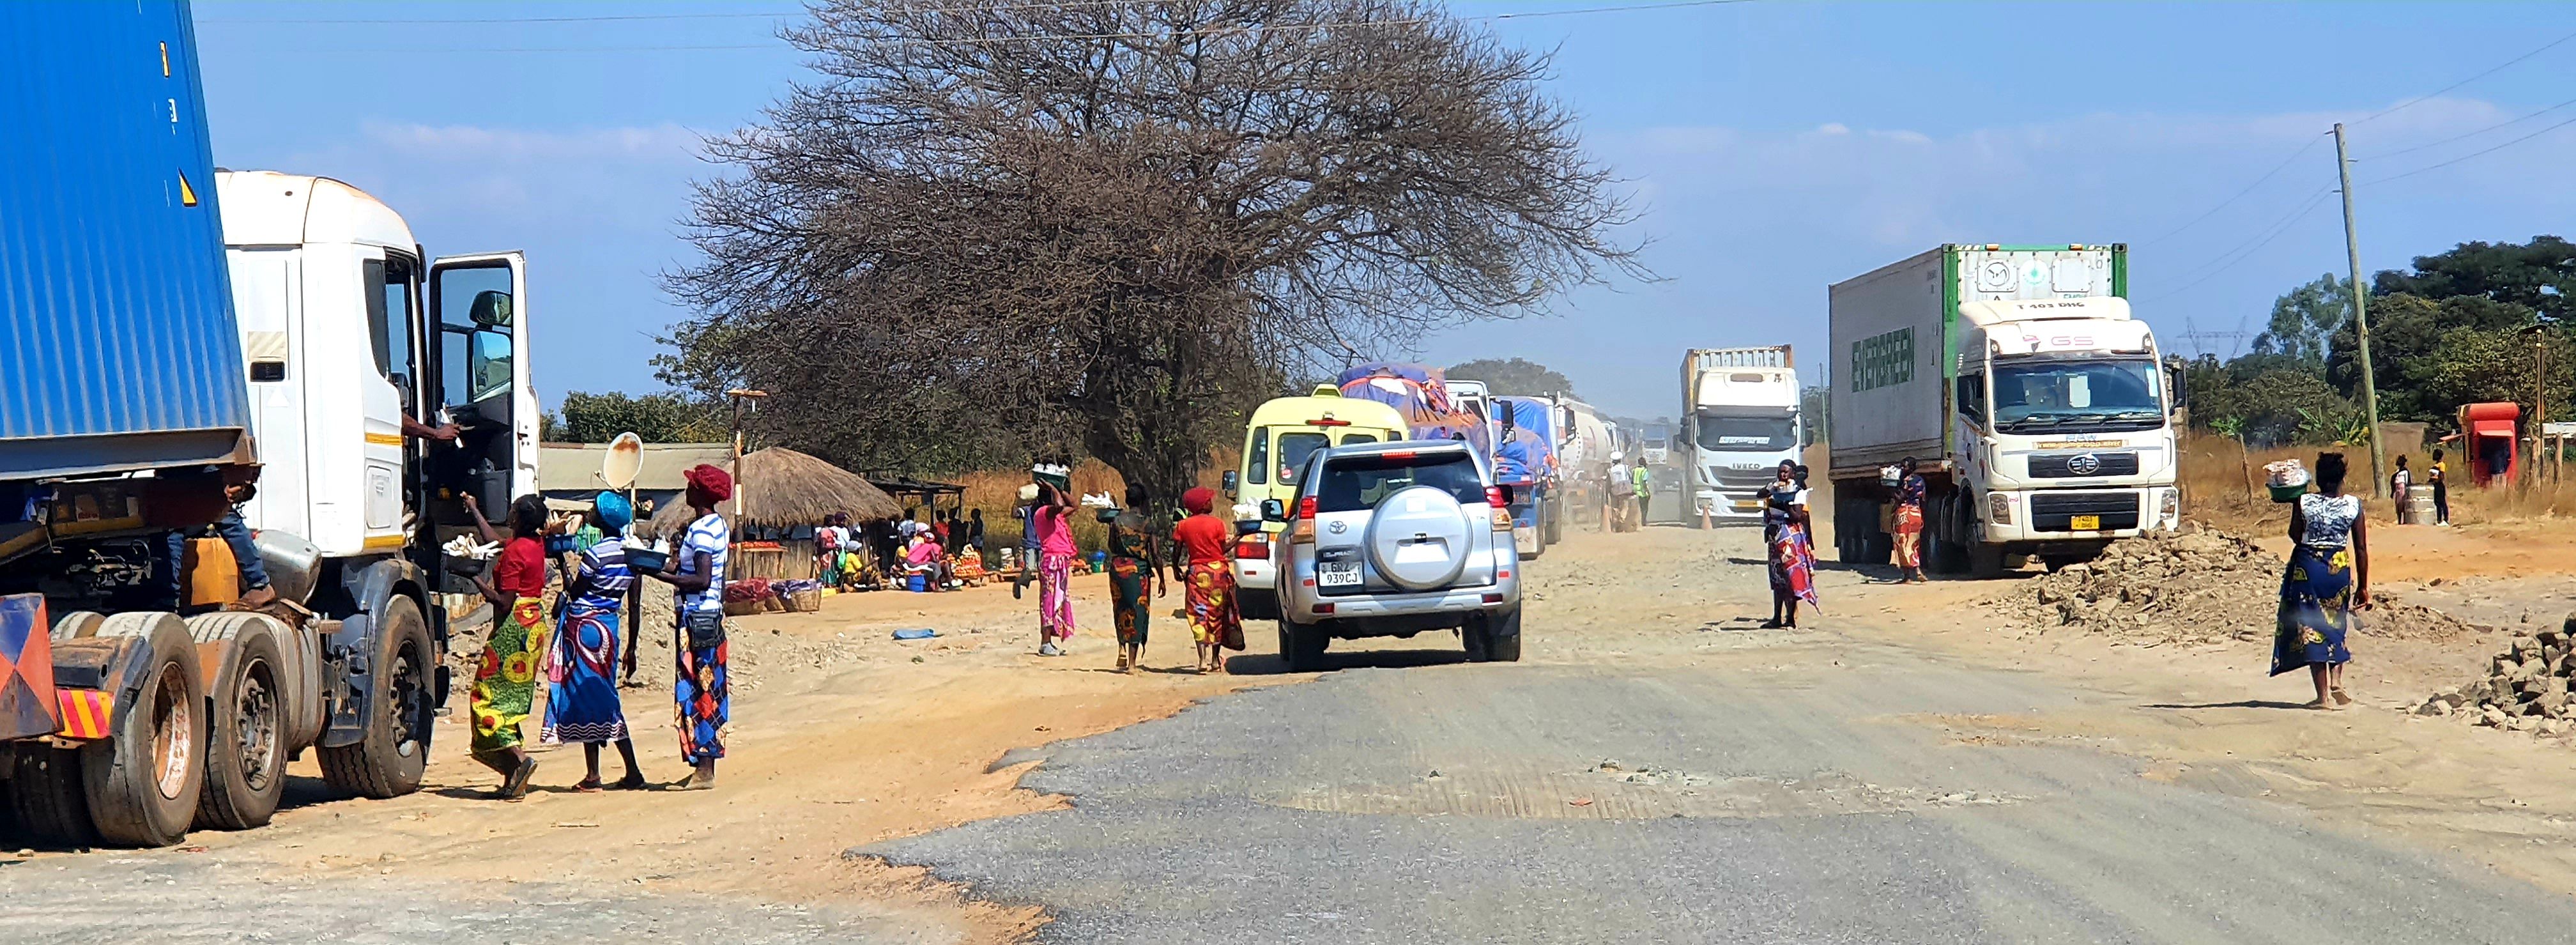 T2 road, Zambia